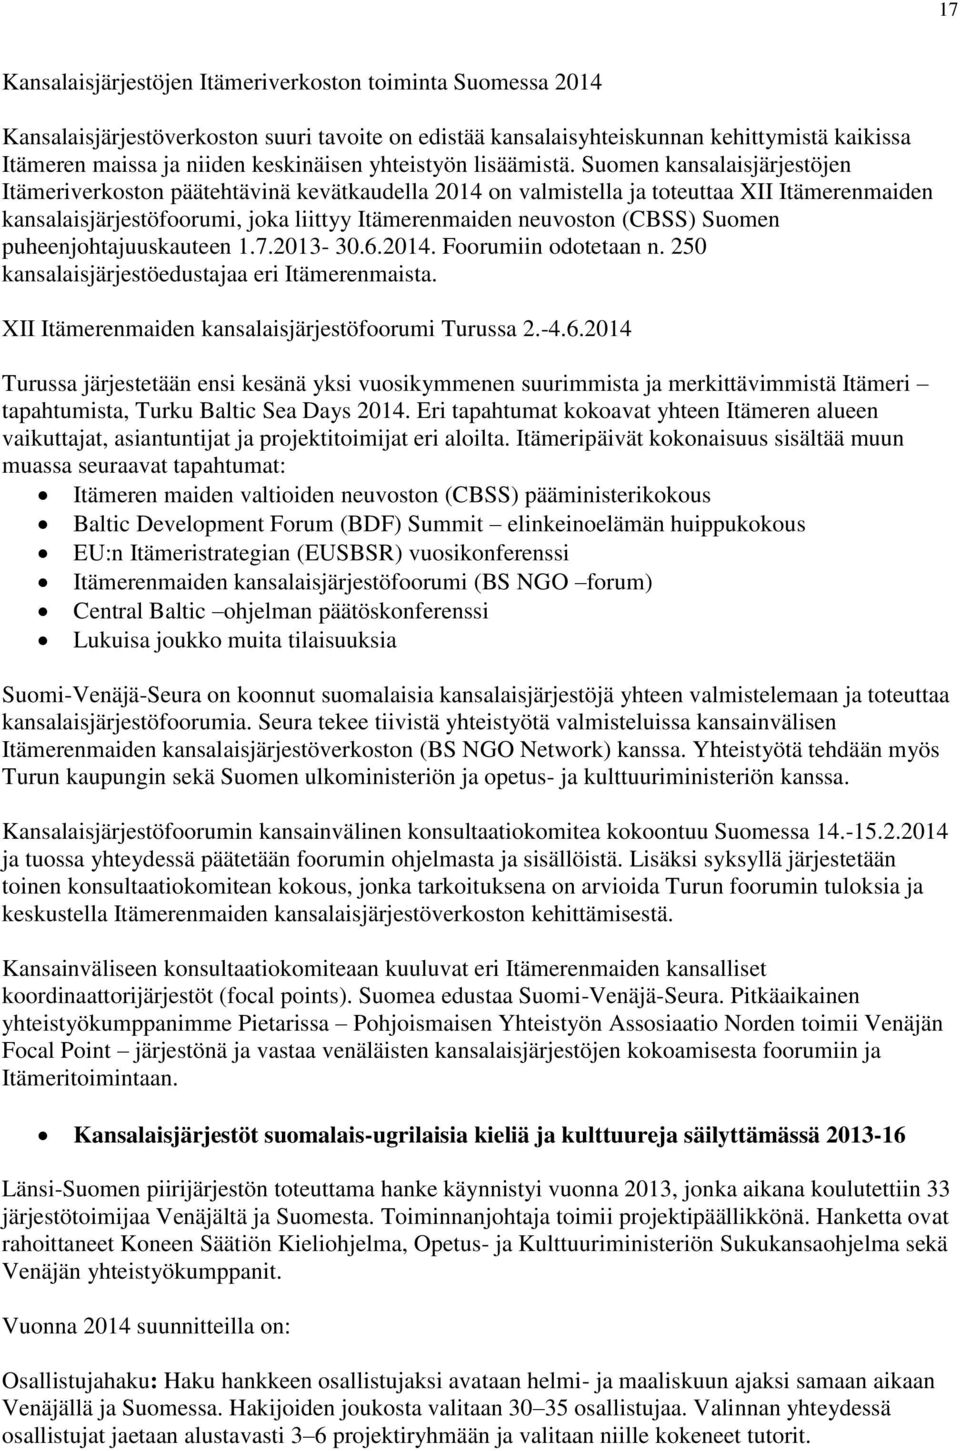 Suomen kansalaisjärjestöjen Itämeriverkoston päätehtävinä kevätkaudella 2014 on valmistella ja toteuttaa XII Itämerenmaiden kansalaisjärjestöfoorumi, joka liittyy Itämerenmaiden neuvoston (CBSS)